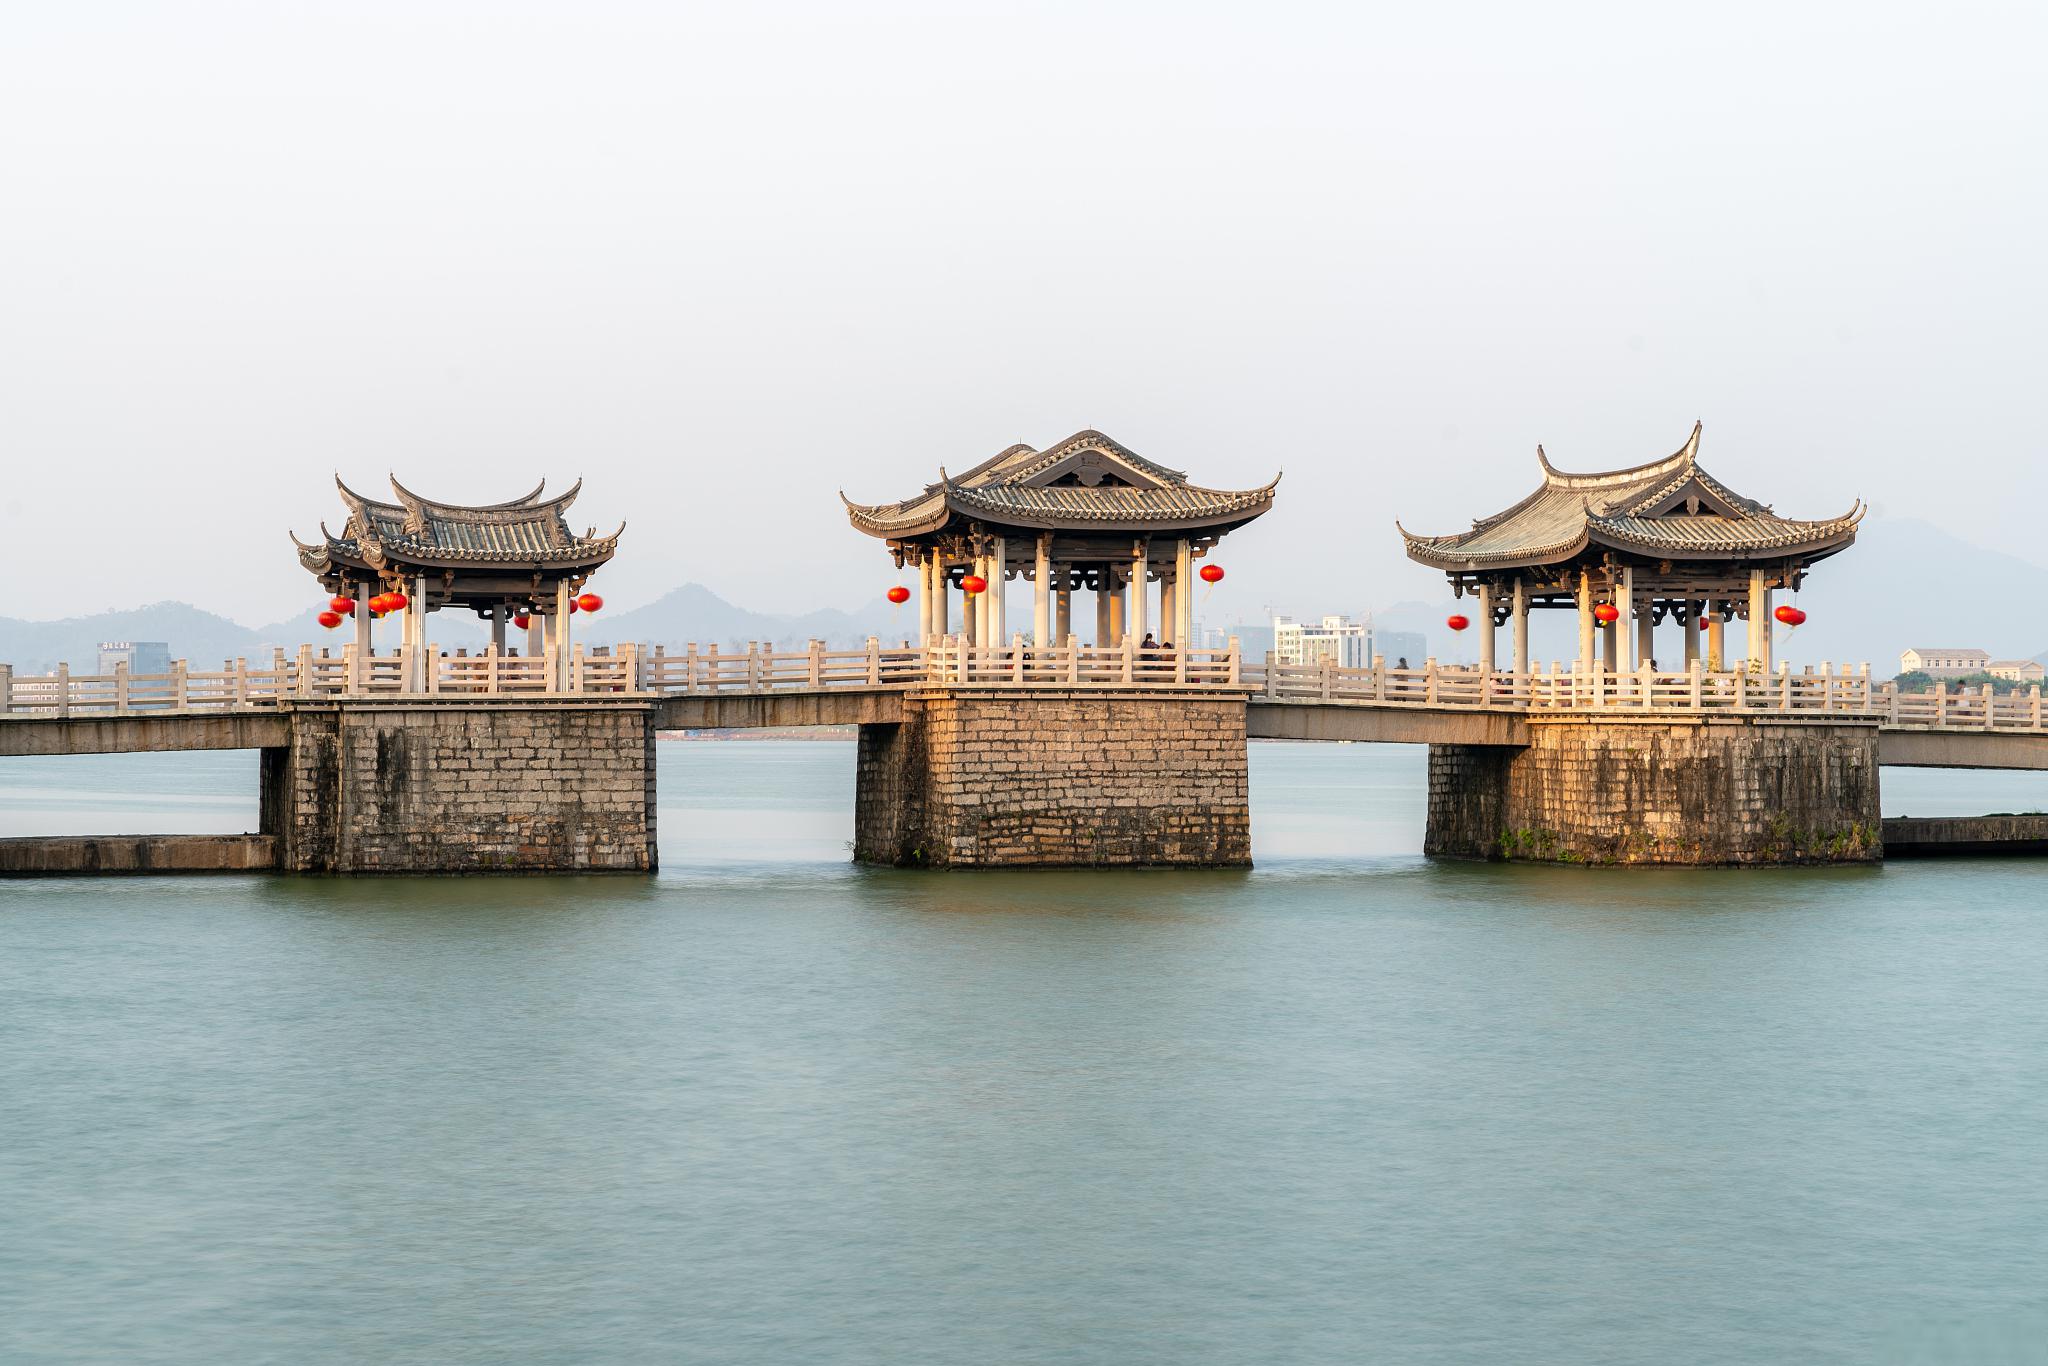 塘栖古镇,一场穿越时光的旅行 塘栖古镇,位于京杭大运河的起点,是浙江